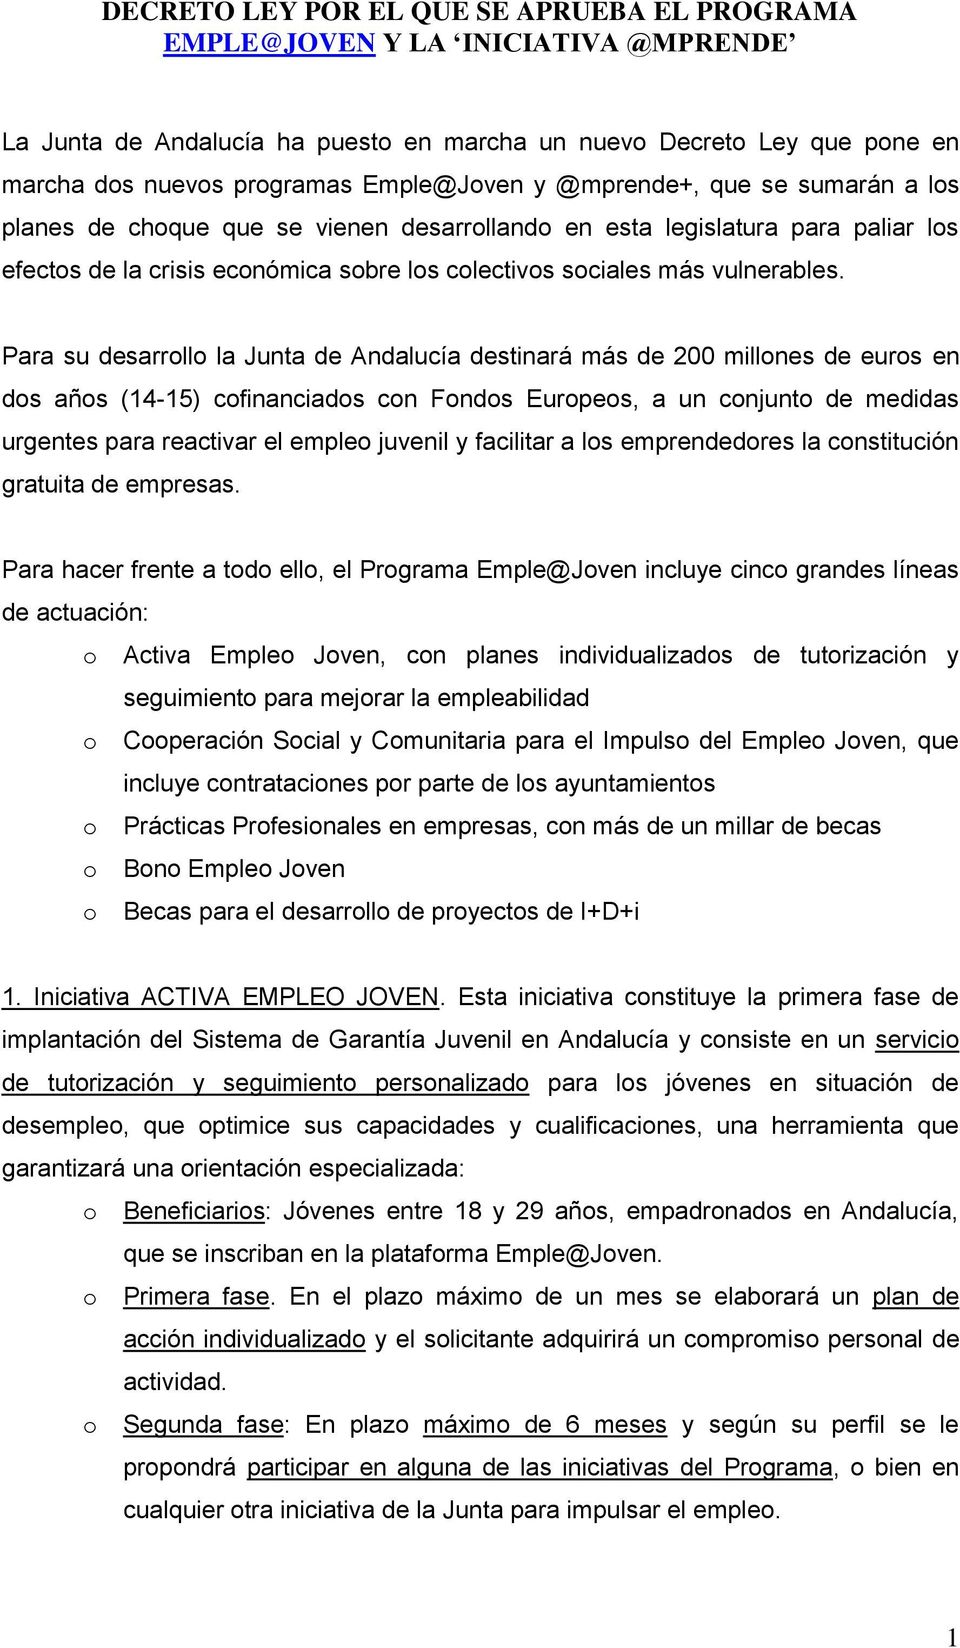 Para su desarrll la Junta de Andalucía destinará más de 200 millnes de eurs en ds añs (14-15) cfinanciads cn Fnds Eurpes, a un cnjunt de medidas urgentes para reactivar el emple juvenil y facilitar a